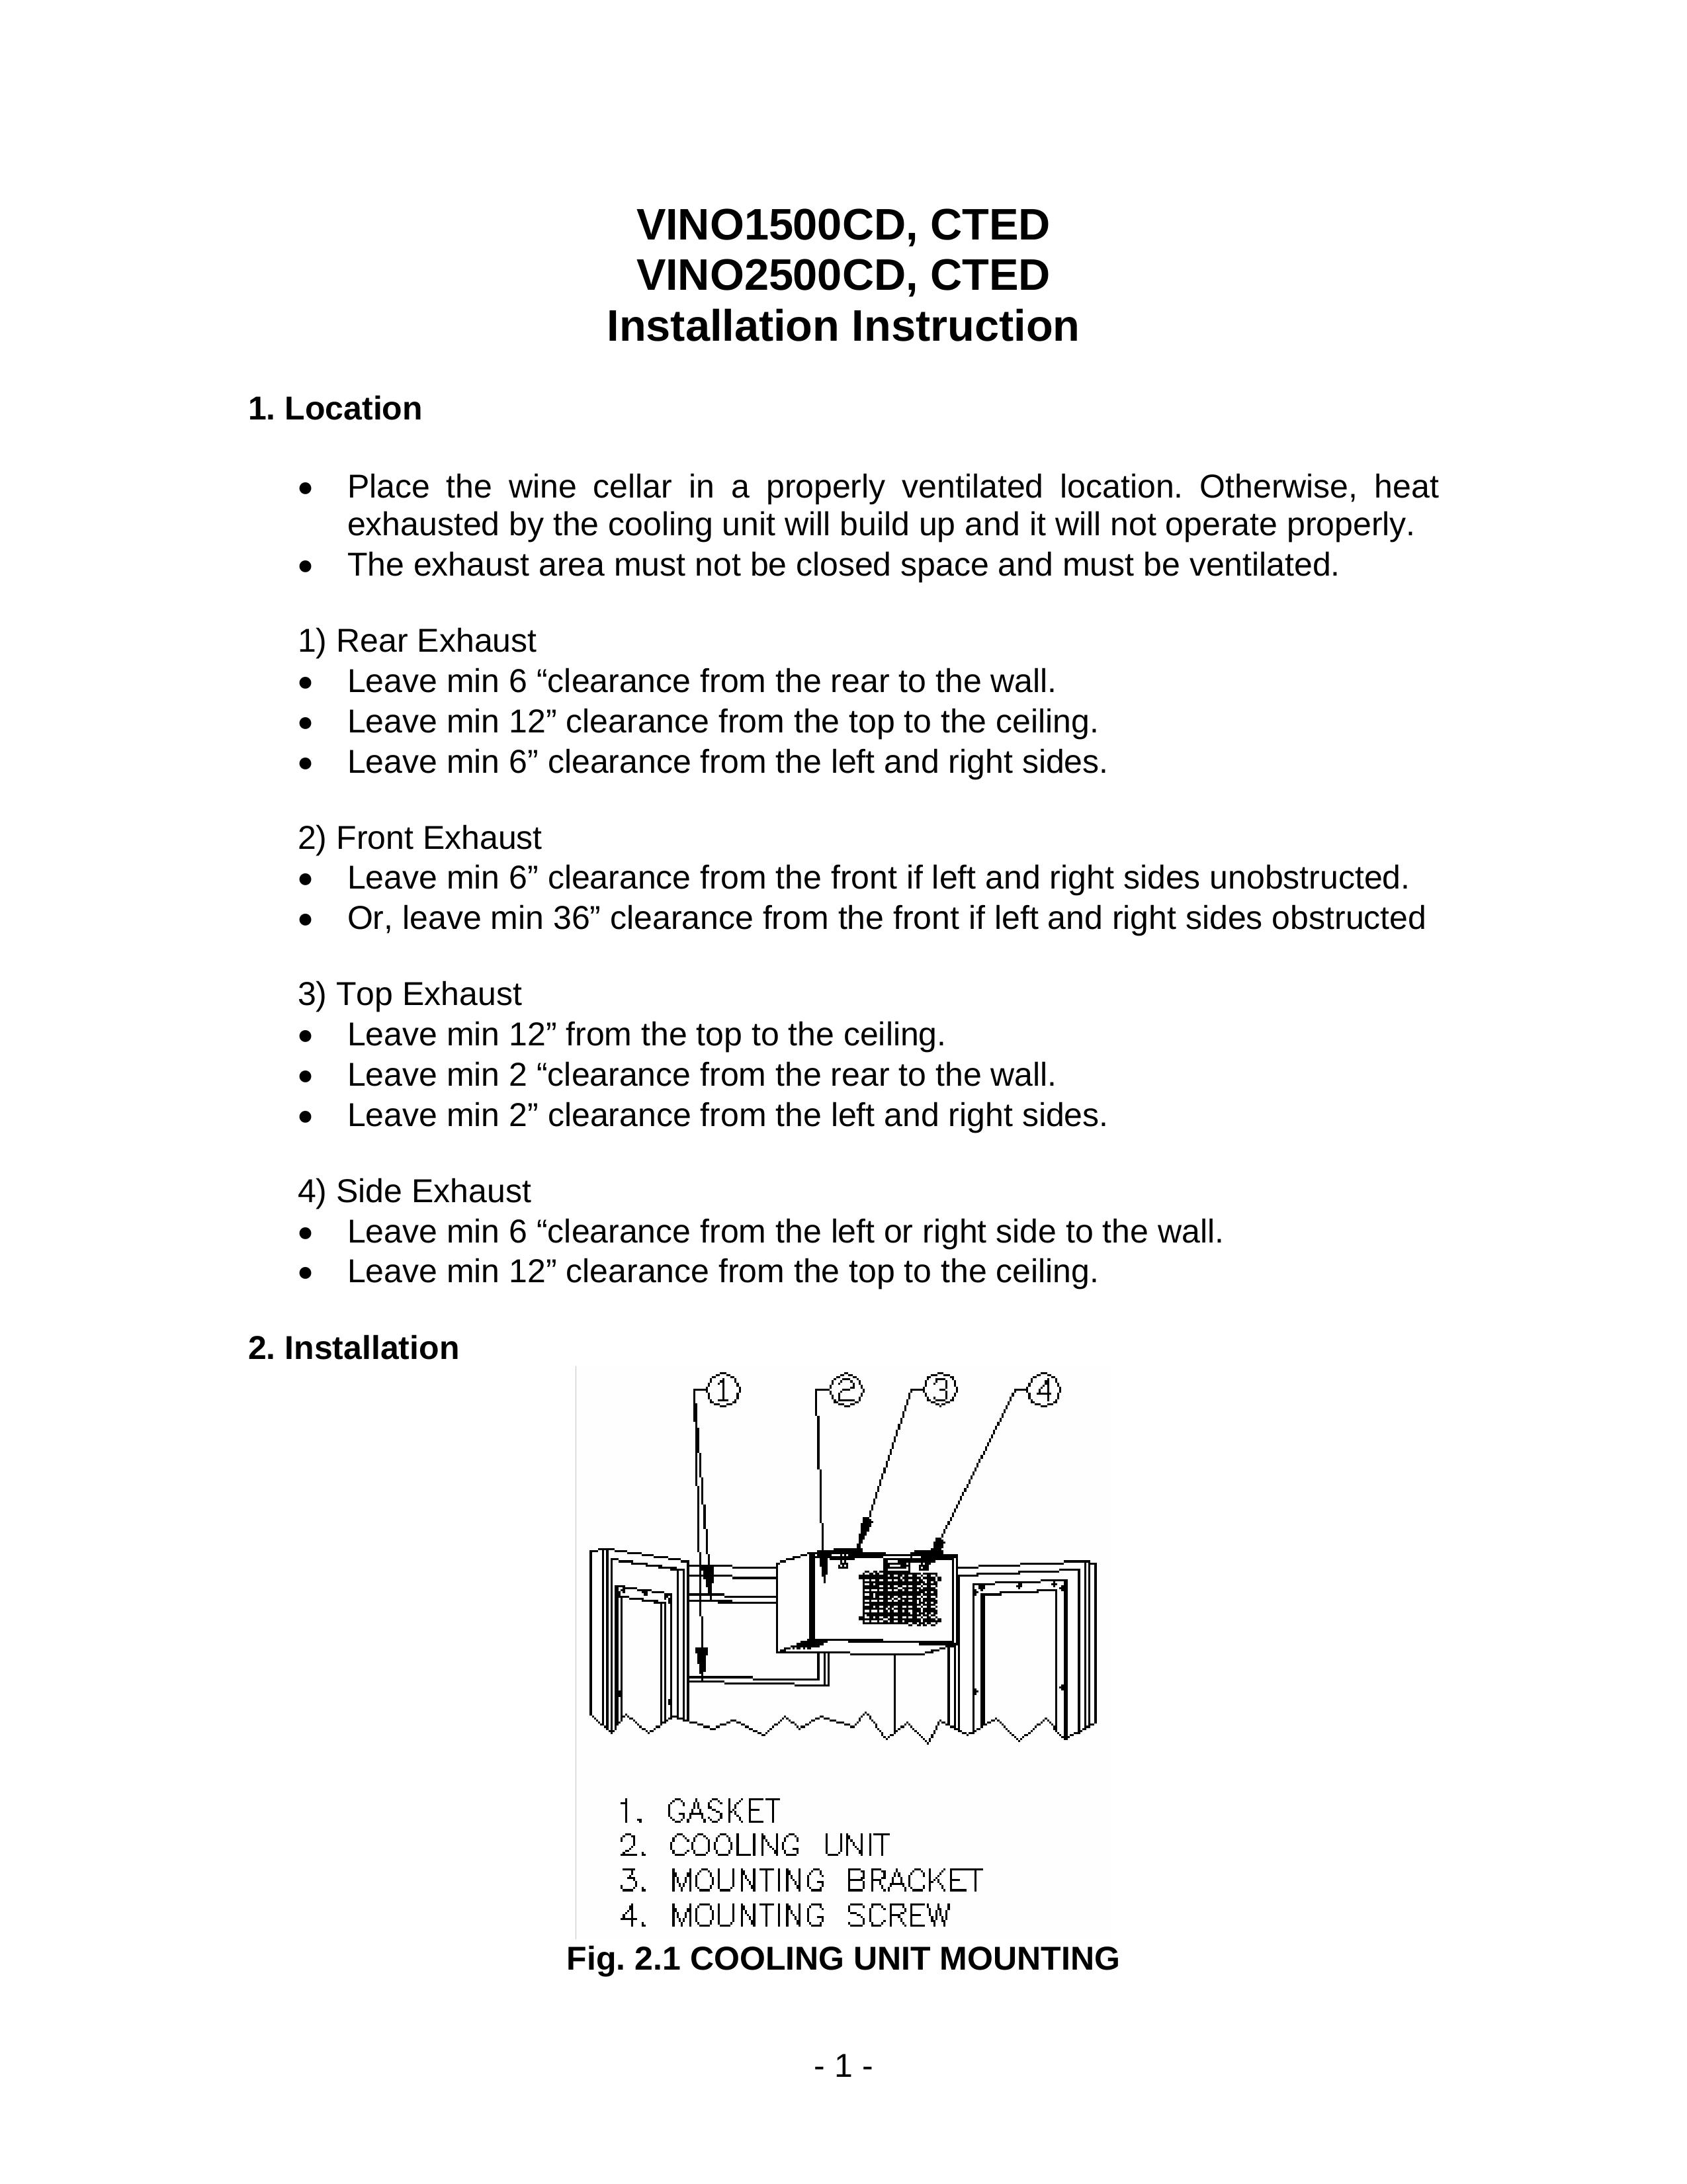 Vinotemp VINO1500CD Refrigerator User Manual